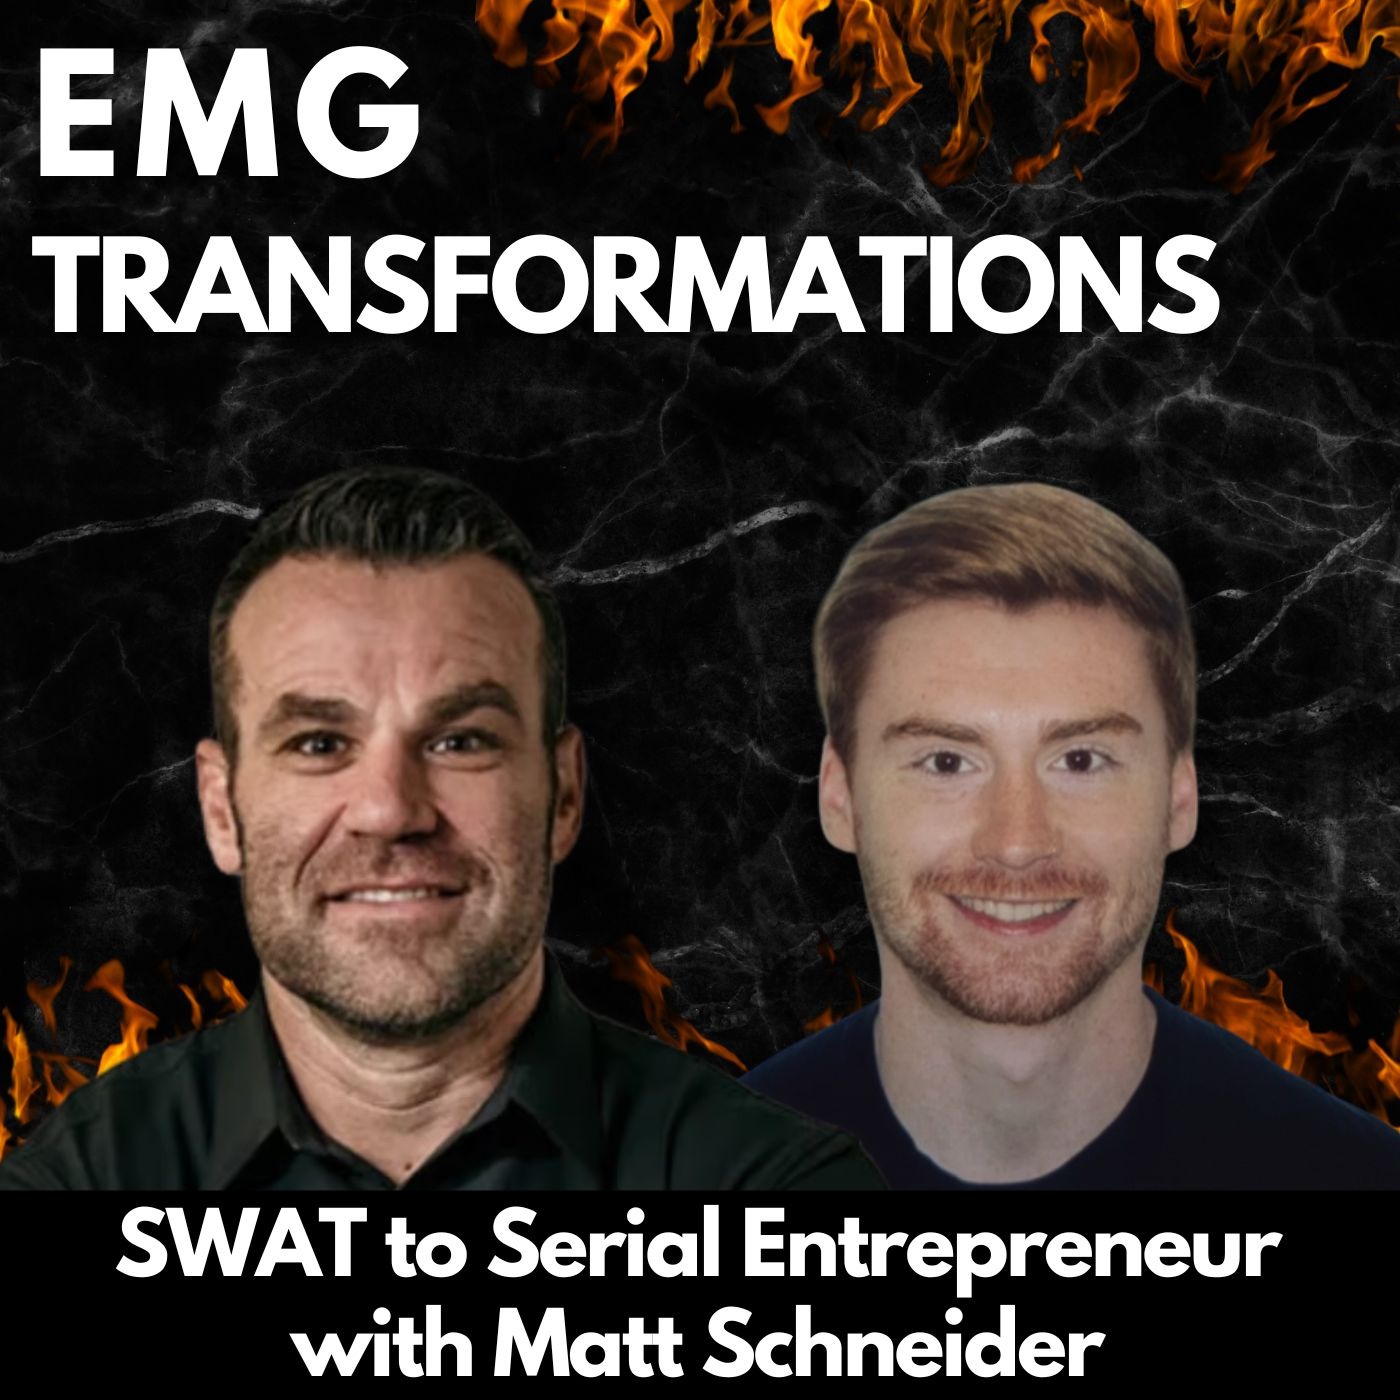 SWAT to Serial Entrepreneur with Matt Schneider